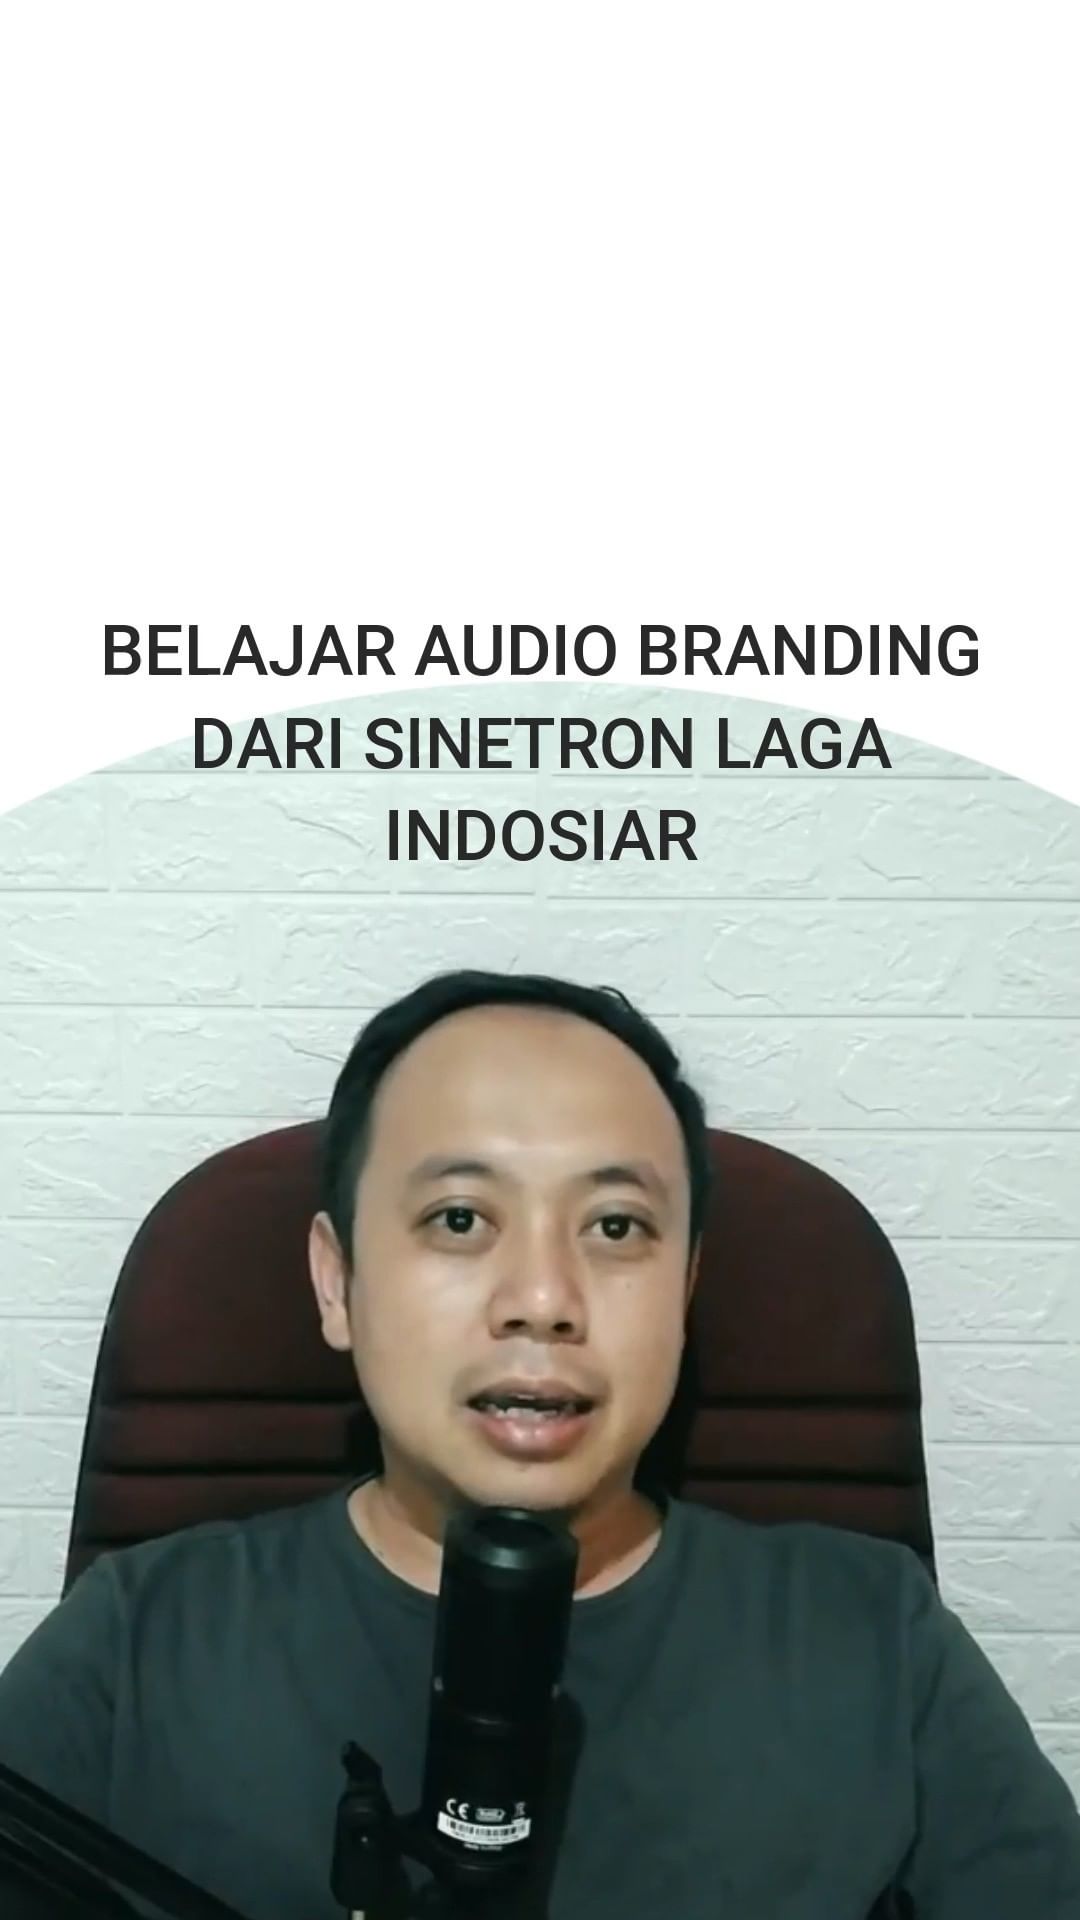 Belajar Audio Branding Dari Indosiar.
.
#audiobranding #branding #audio #indosiar #marketing #internetmarketing #reupload #videolama         ...